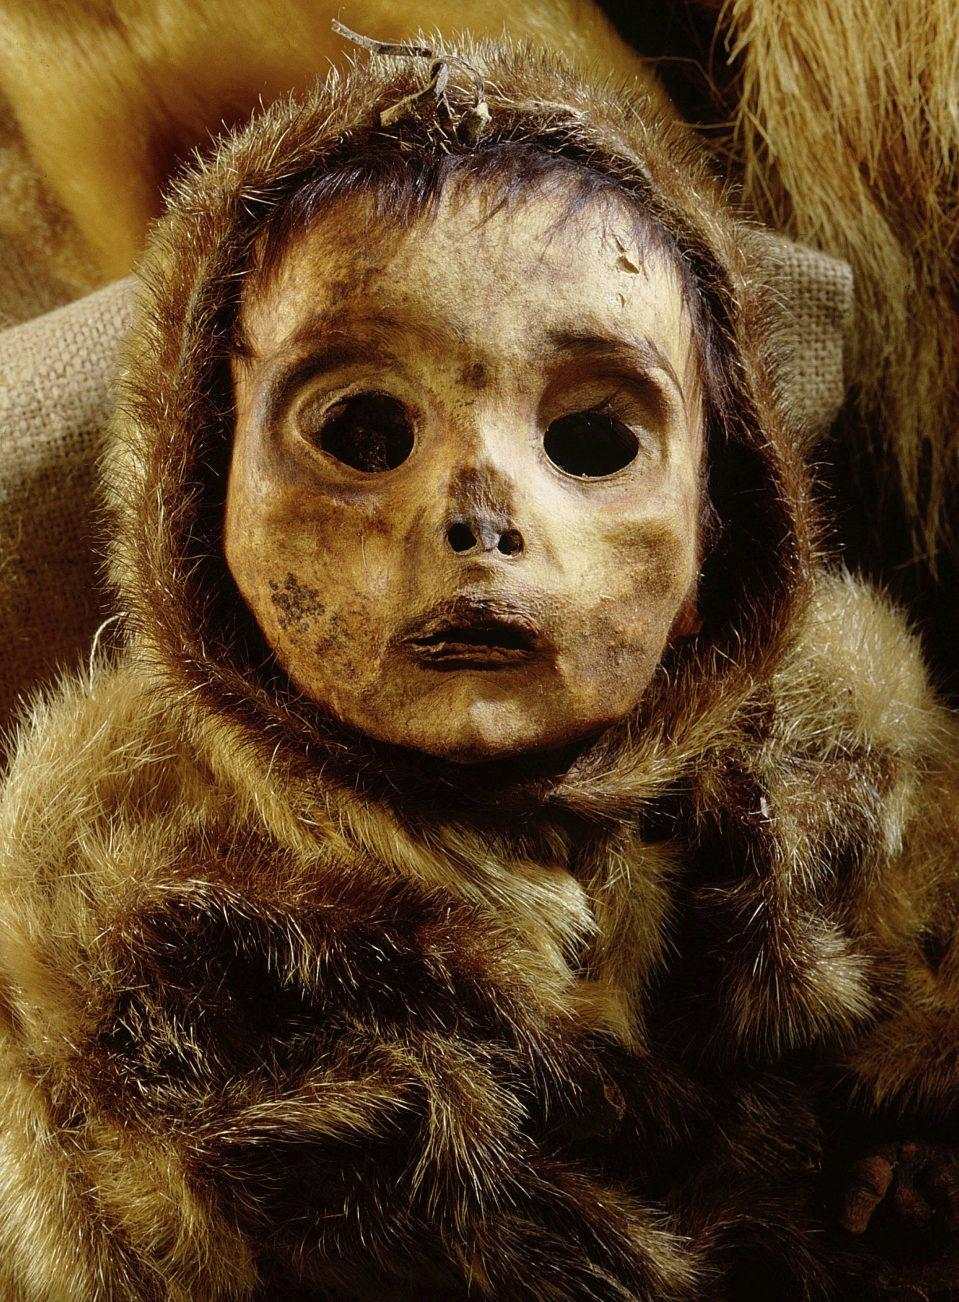 栩栩如生的婴儿木乃伊,考古学家相信婴儿被活埋.